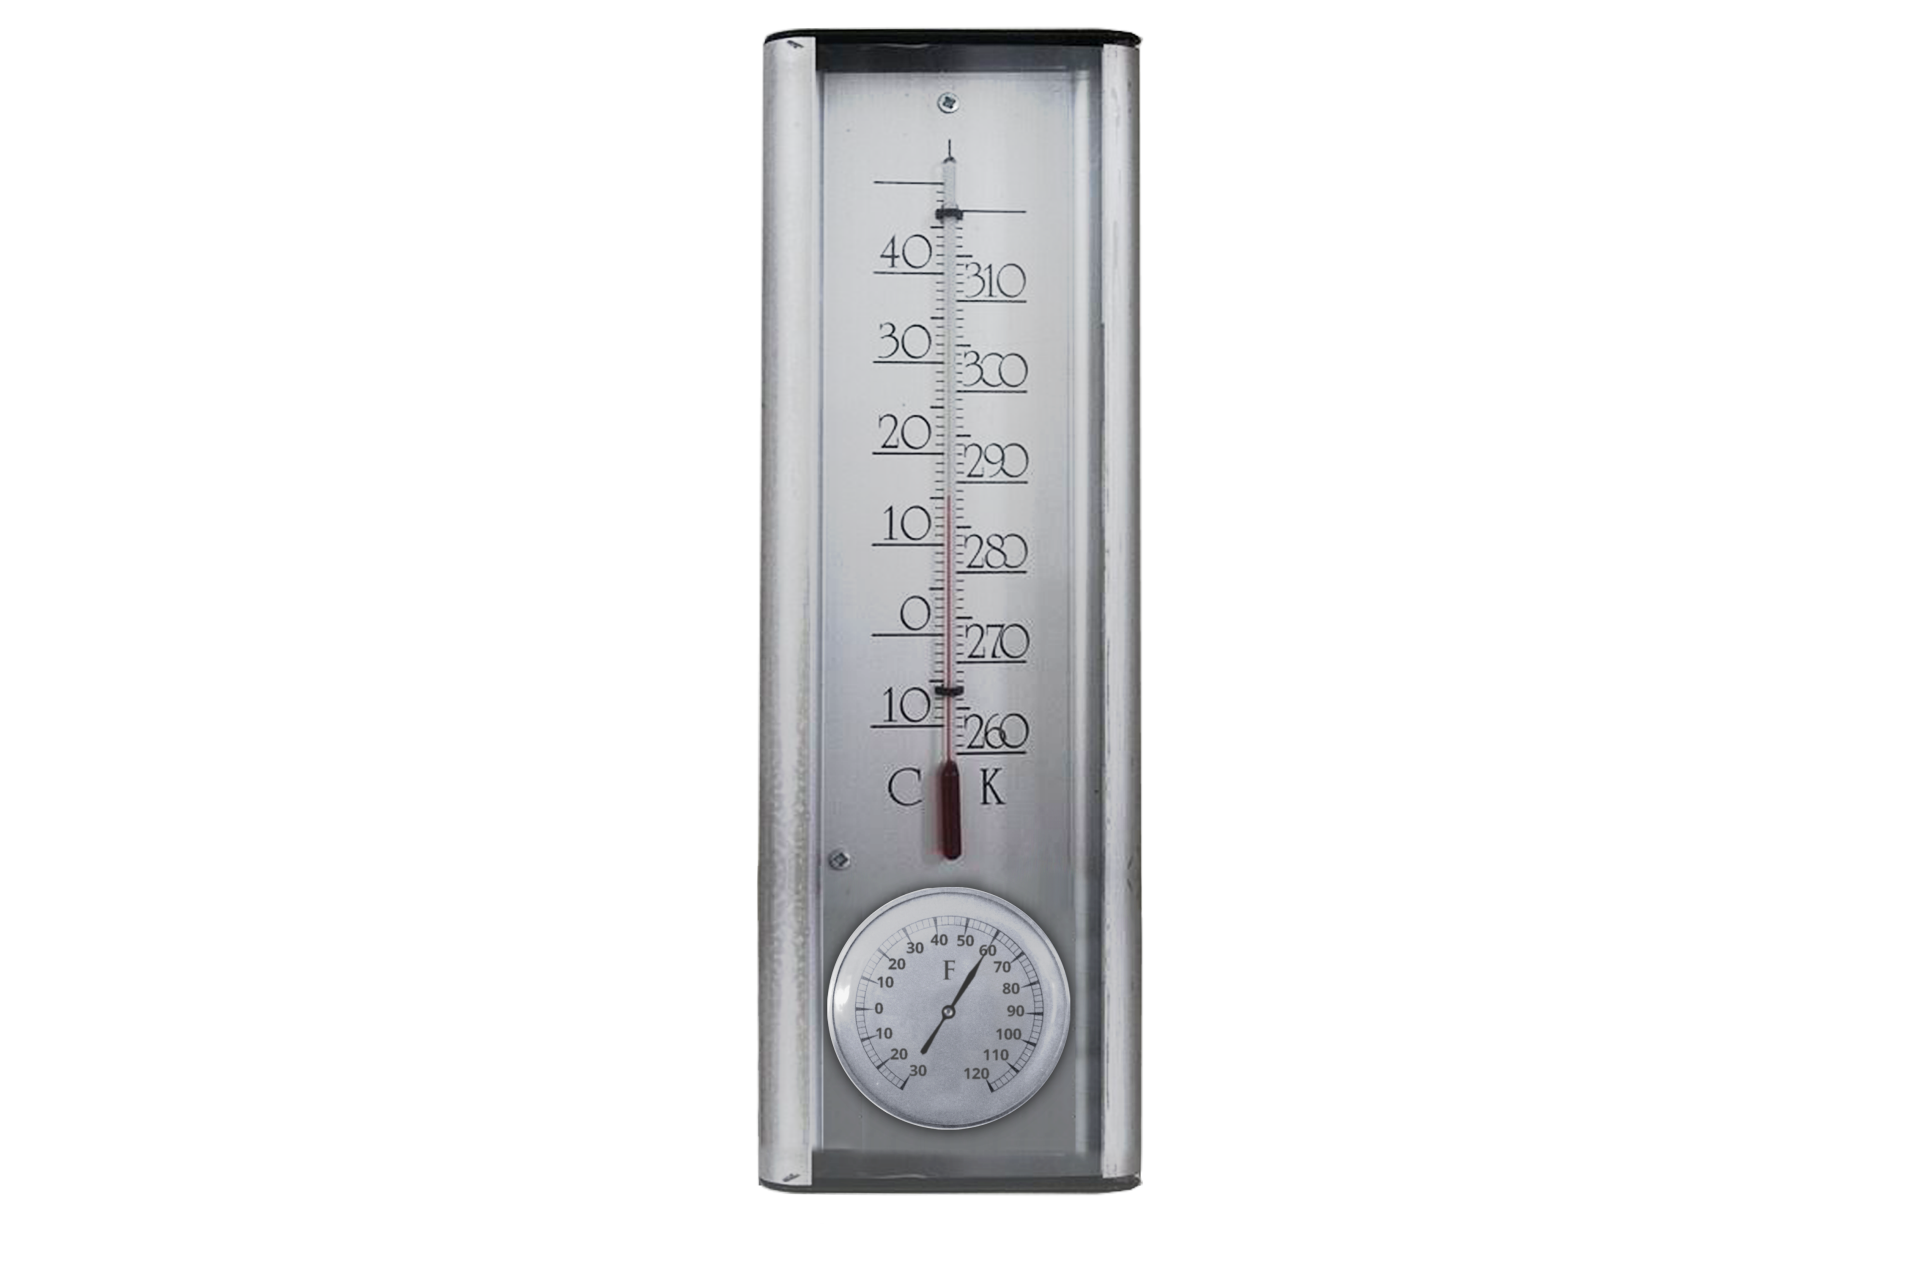 Fotografia przedstawia termometr cieczowy z trzema skalami temperatur: Celsjusza, Fahrenheita i Kelvina. Skale Celsjusza (o zakresie od minus dziesięć do plus pięćdziesiąt stopni Celsjusza) oraz Kelvina (o zakresie od dwustu sześćdziesięciu do trzystu dwudziestu kelwinów) znajdują się przy słupku cieczy, który wskazuje temperaturę około piętnastu stopni Celsjusza oraz około dwieście osiemdziesięciu ośmiu i pół kelwinów. Skala Fahrenheita (o zakresie od minus trzydziestu do stu dwudziestu stopni Fahrenheita) jest poniżej. Jest to tarcza ze wskazówką, wskazującą sześćdziesiąt stopni Fahrenheita.